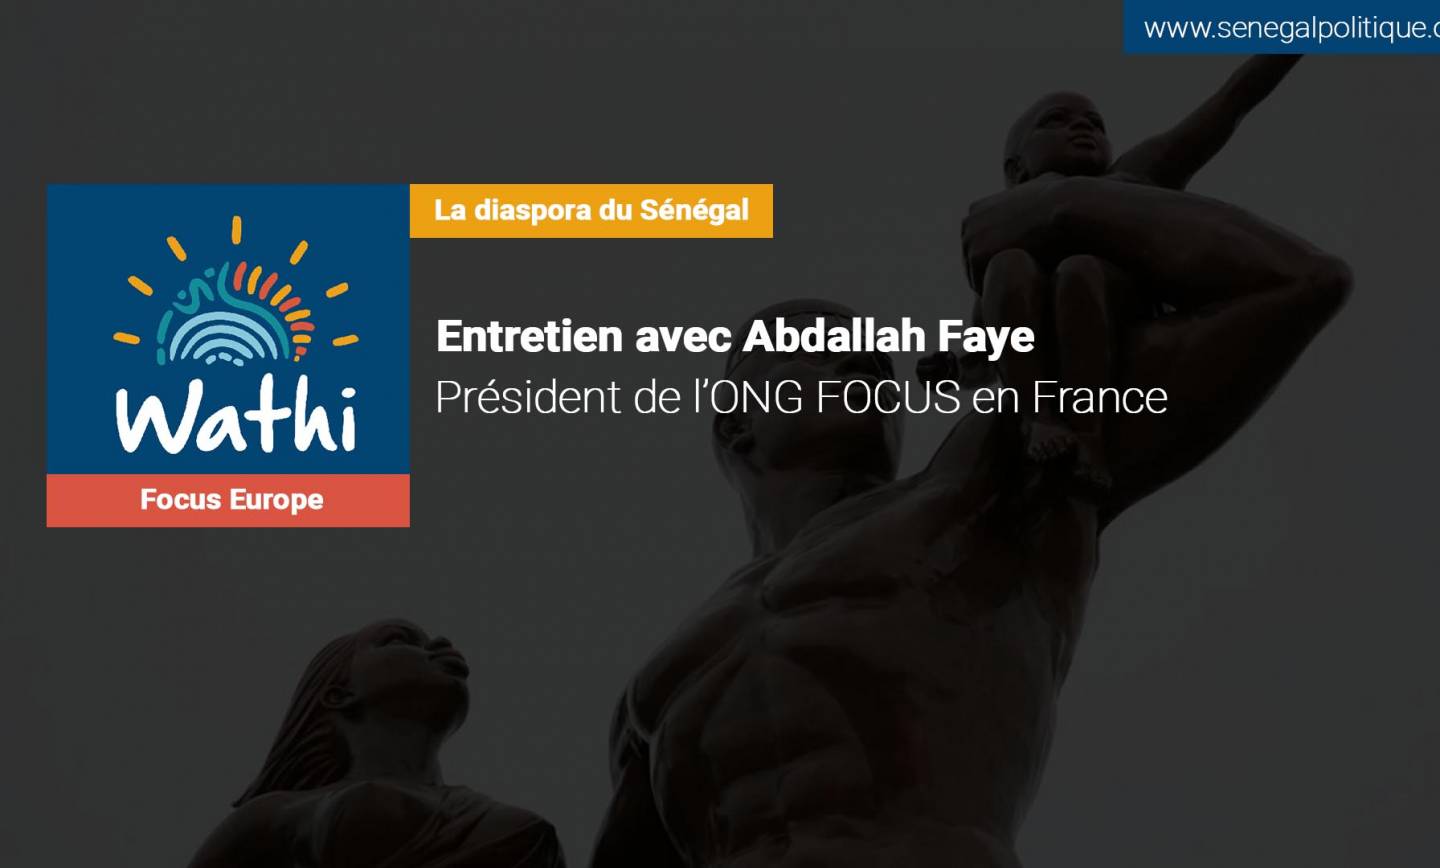 Abdallah Faye, Président de l’ONG Focus en France: « L’effort d’une aide pour la diaspora est à saluer mais sa gestion n’a pas du tout été efficace »